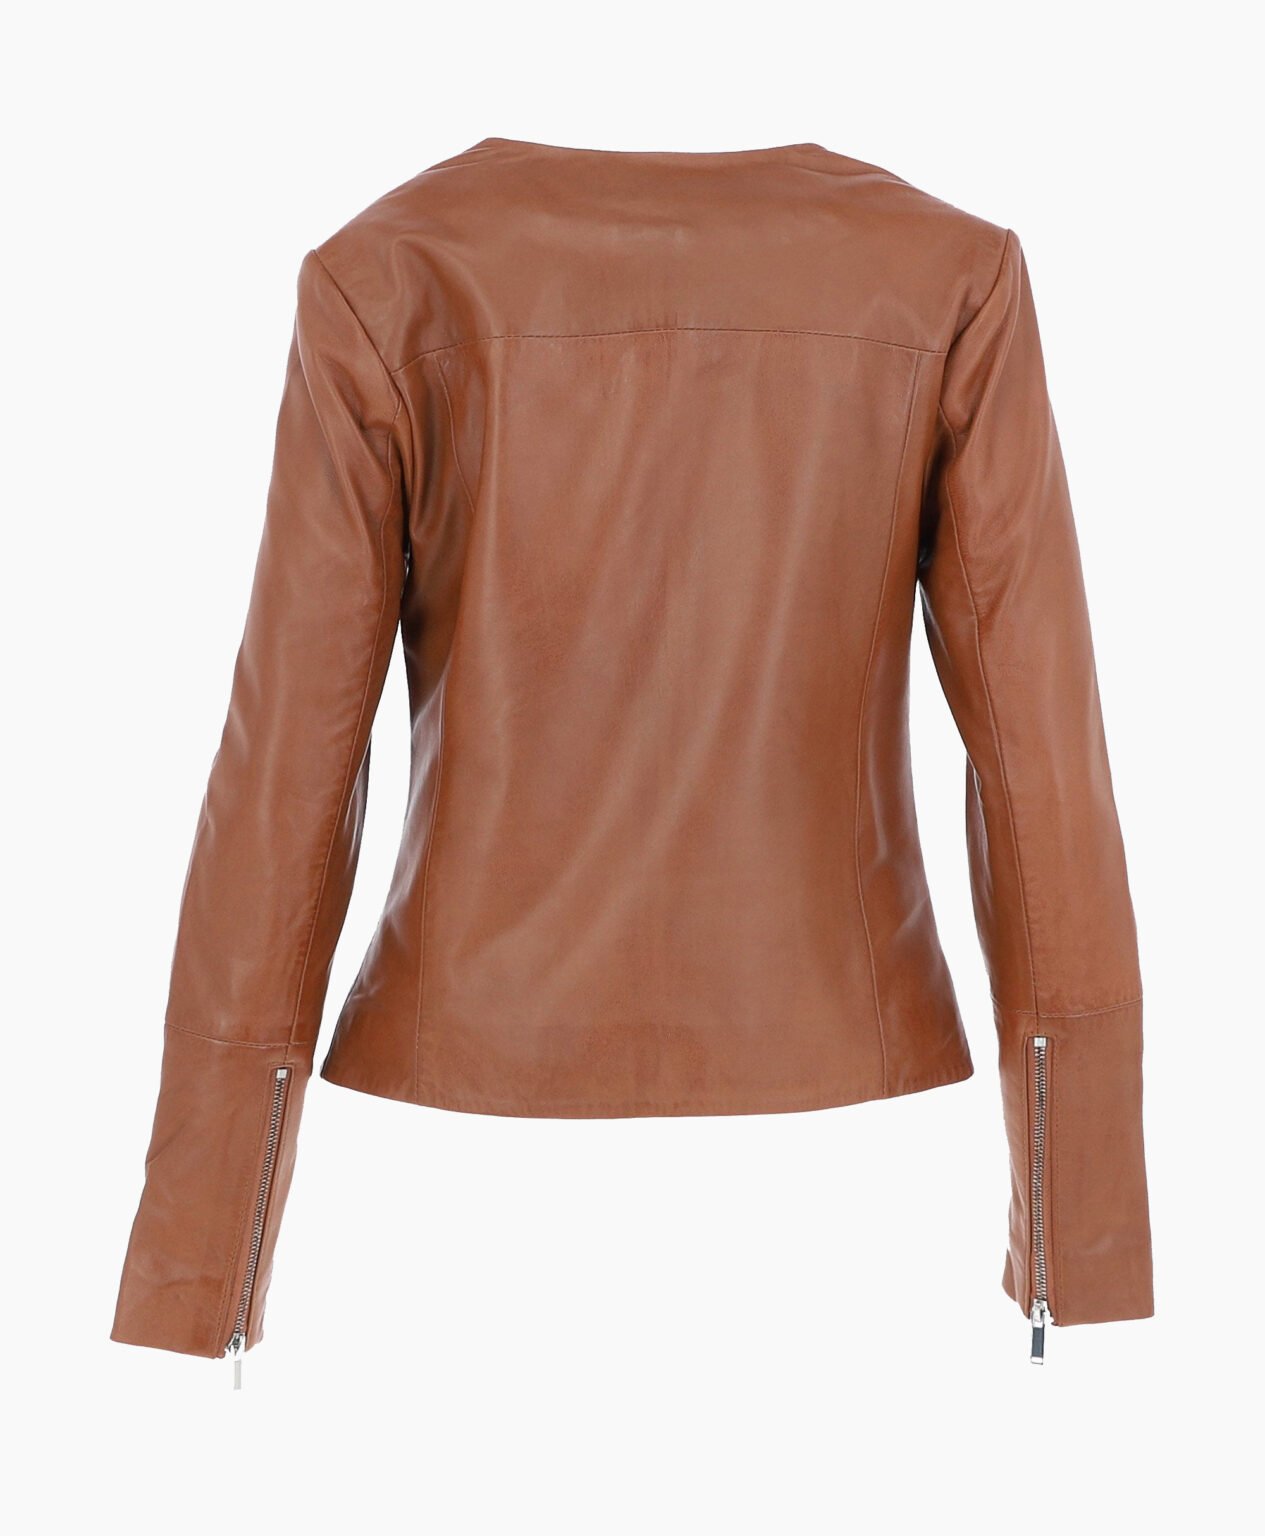 vogue-jacket-leather-fashion-jacket-tan-elizabeth-image202